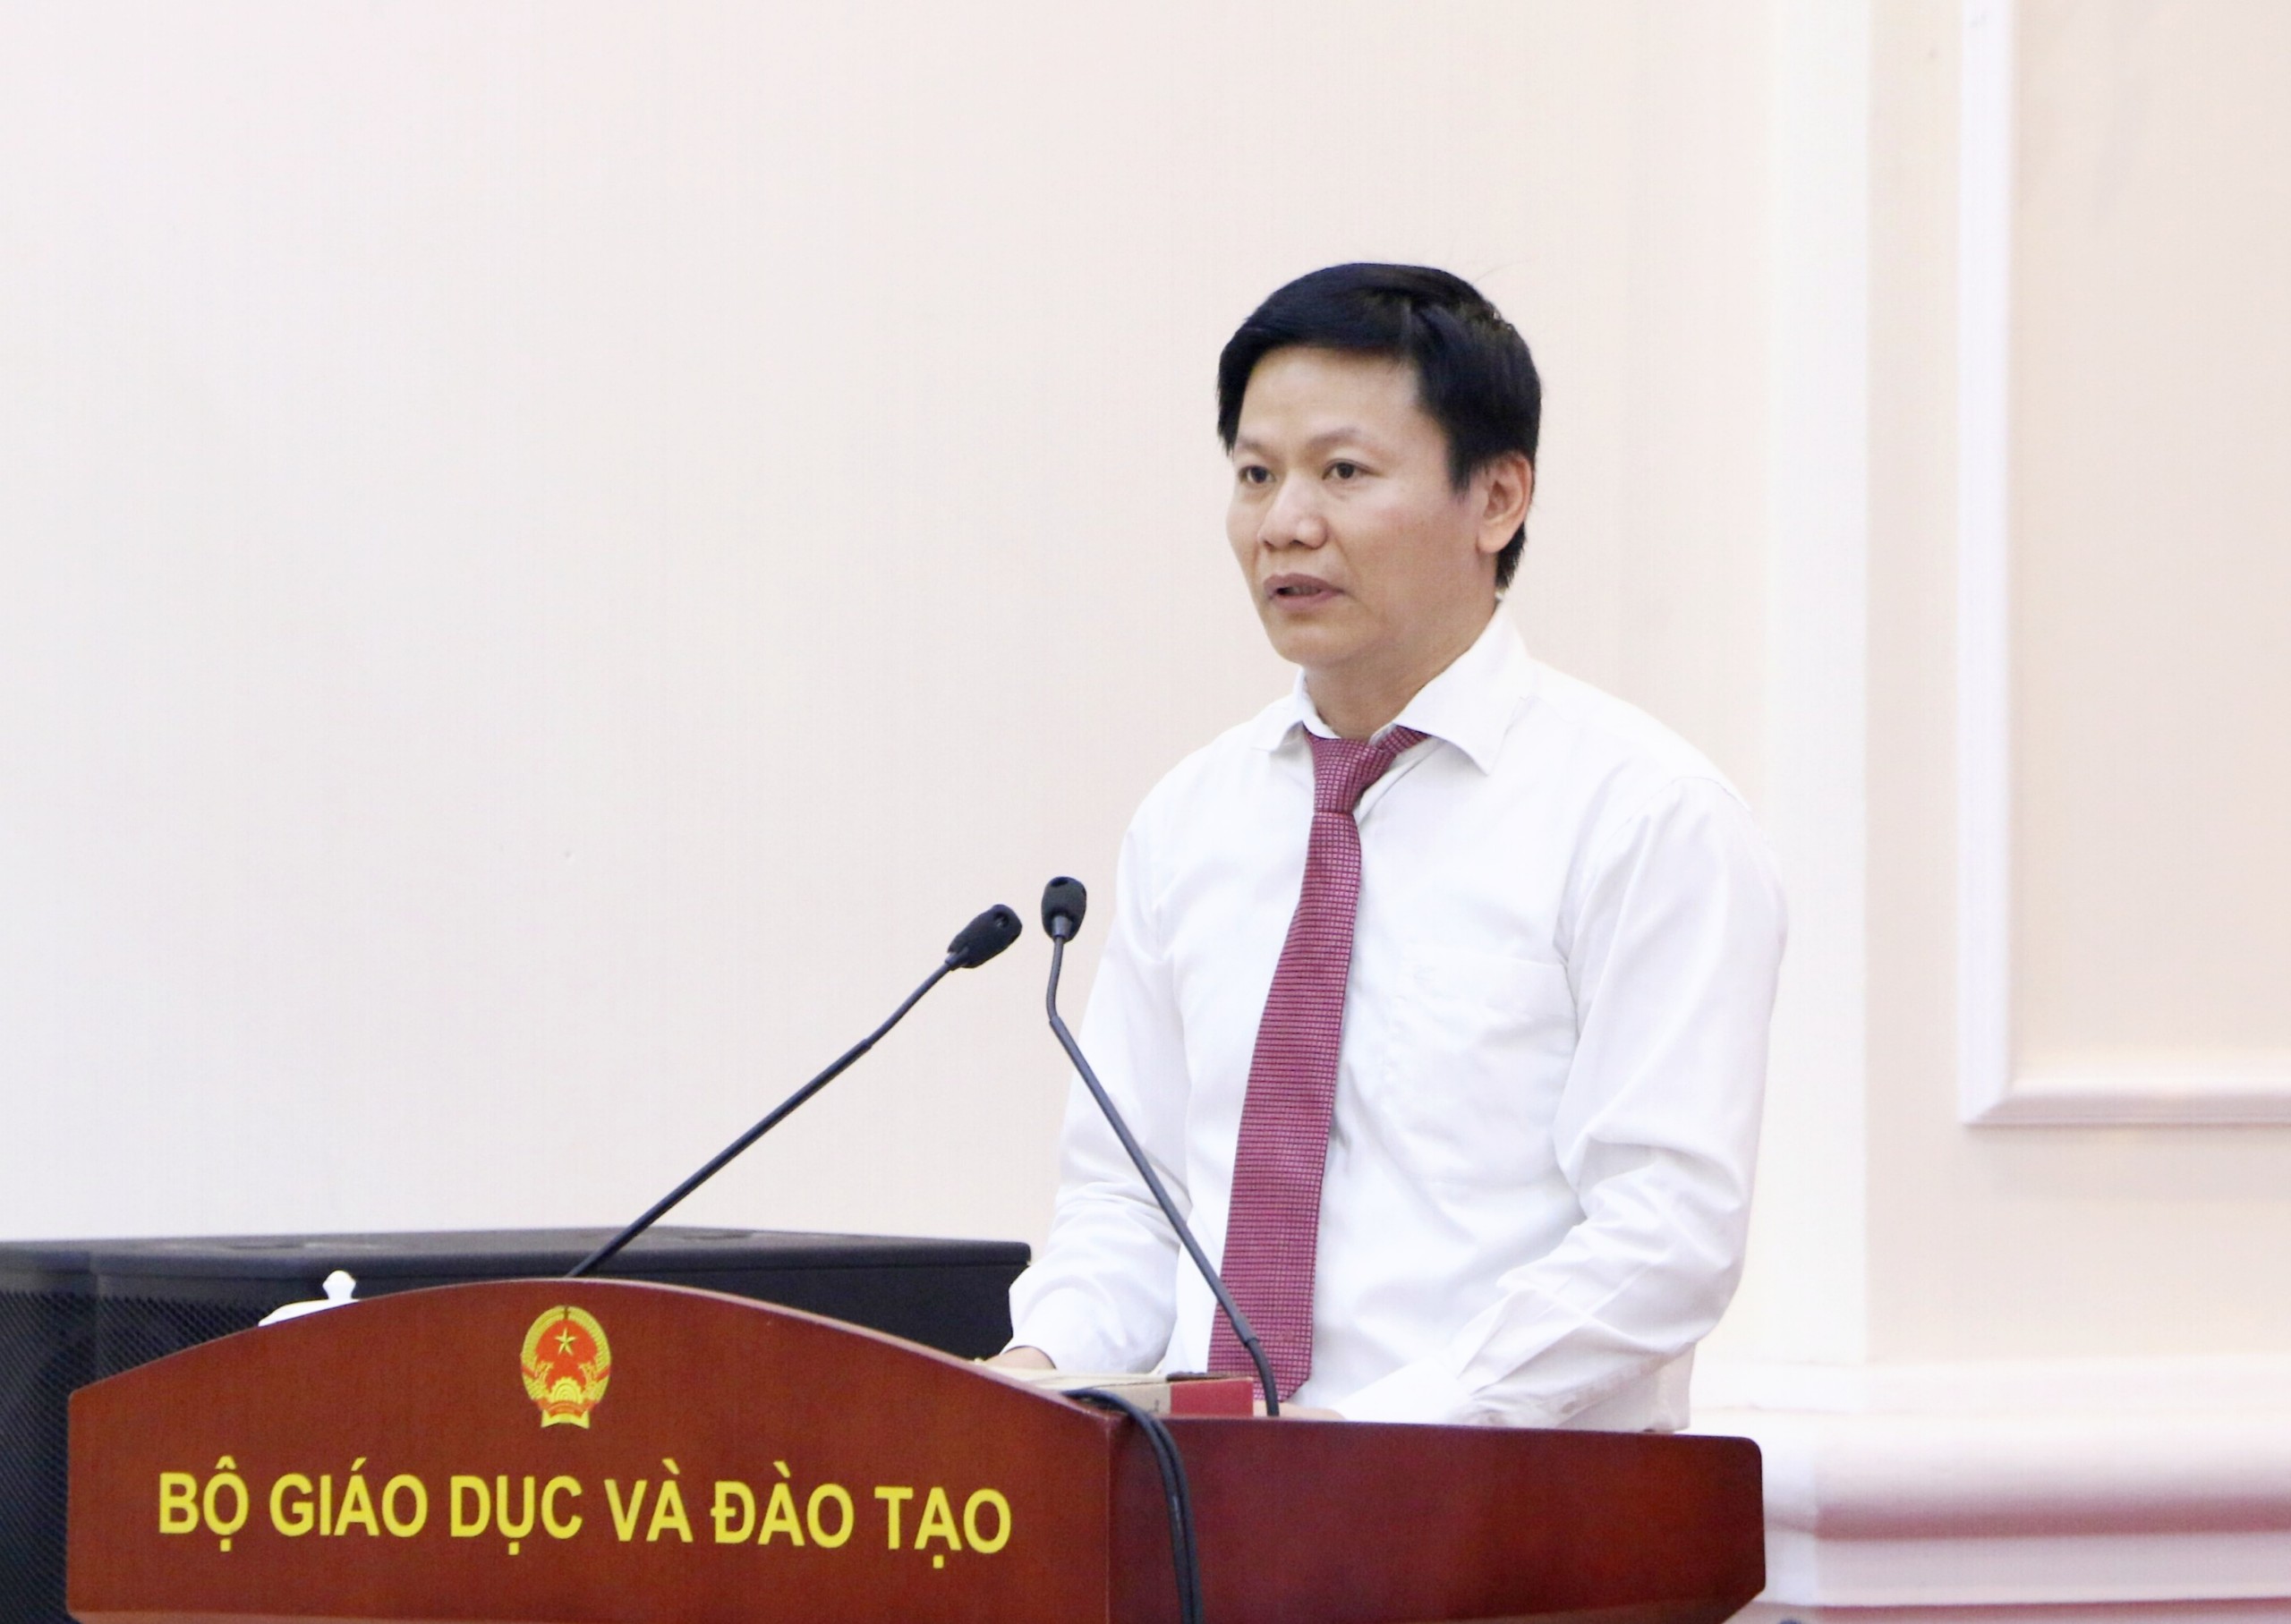 TS. Ngô Thị Minh làm Chủ tịch Hội Thể thao học sinh Việt Nam ảnh 1